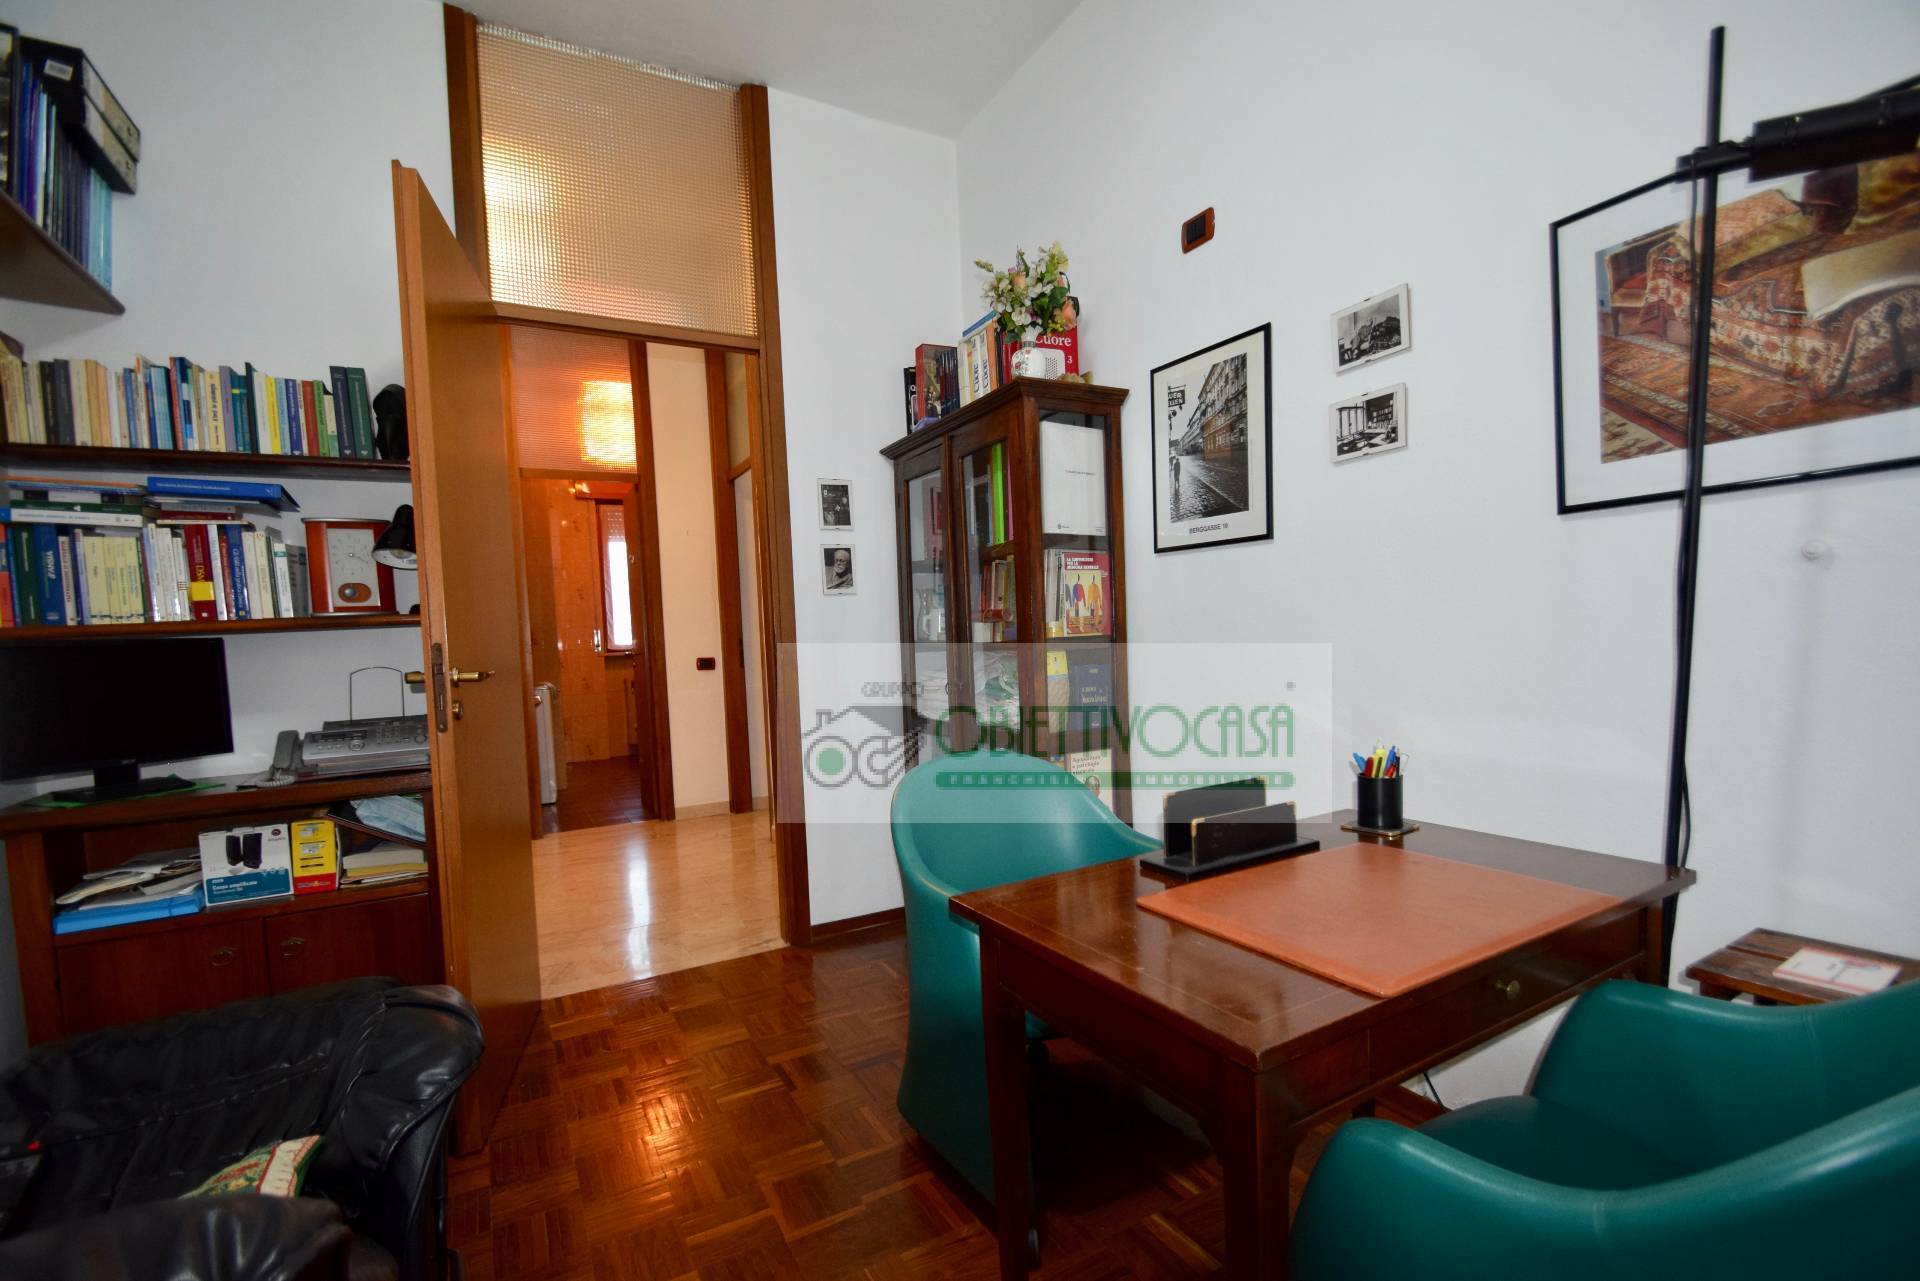 Appartamento in vendita a Trezzano sul Naviglio, 2 locali, zona Località: Neruda, prezzo € 110.000 | CambioCasa.it